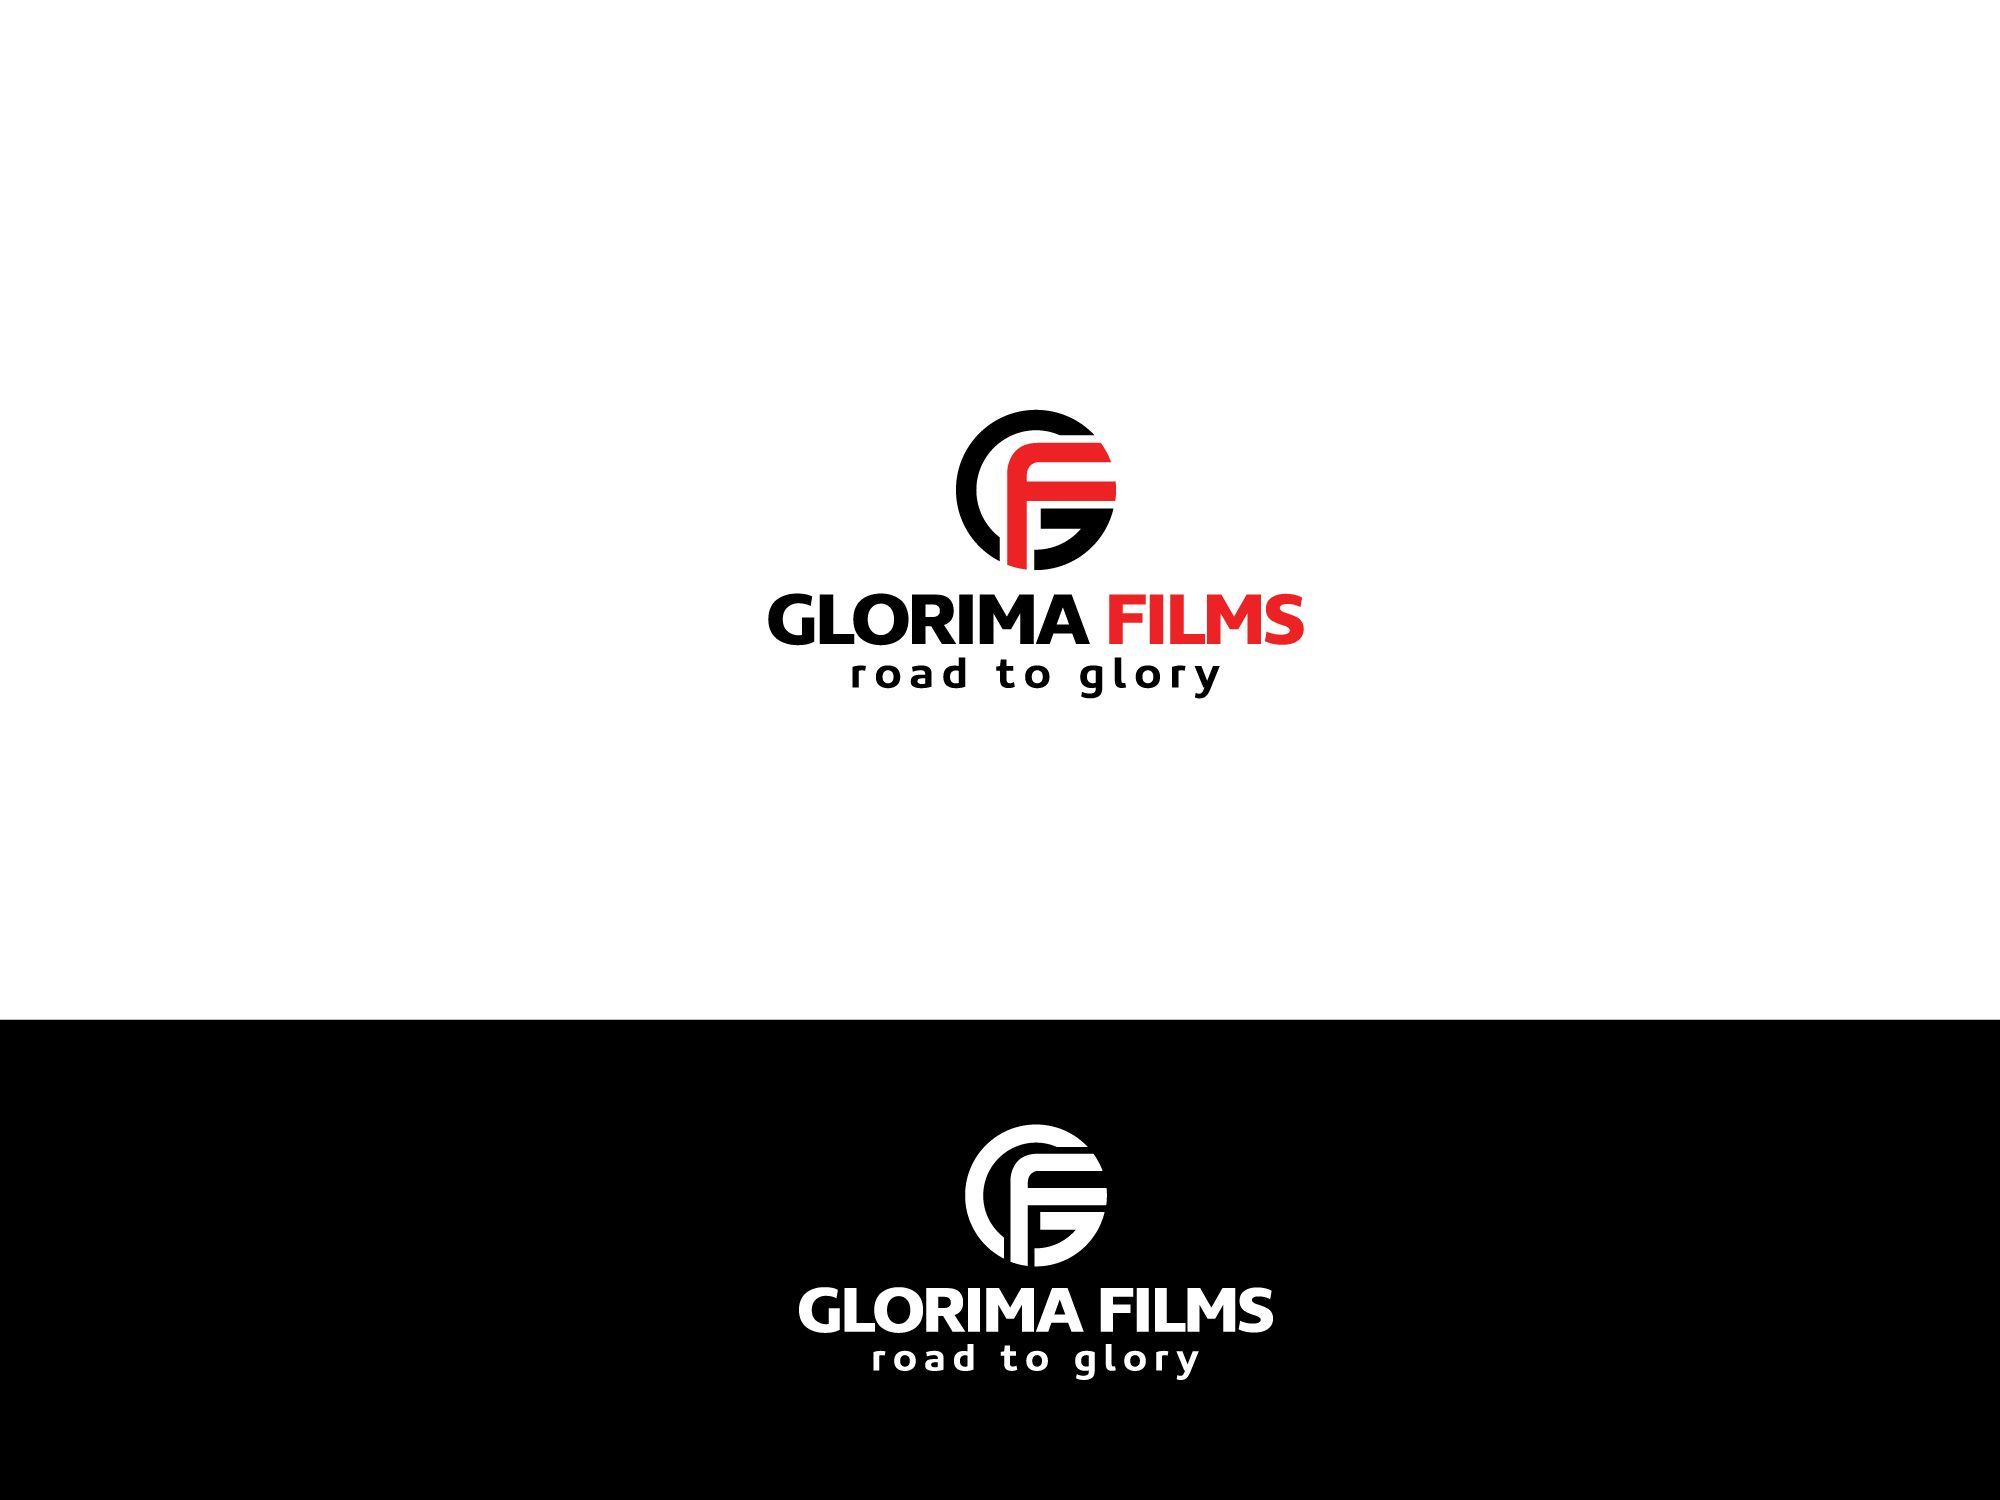 Логотип для кинокомпании Glorima films - дизайнер Alphir